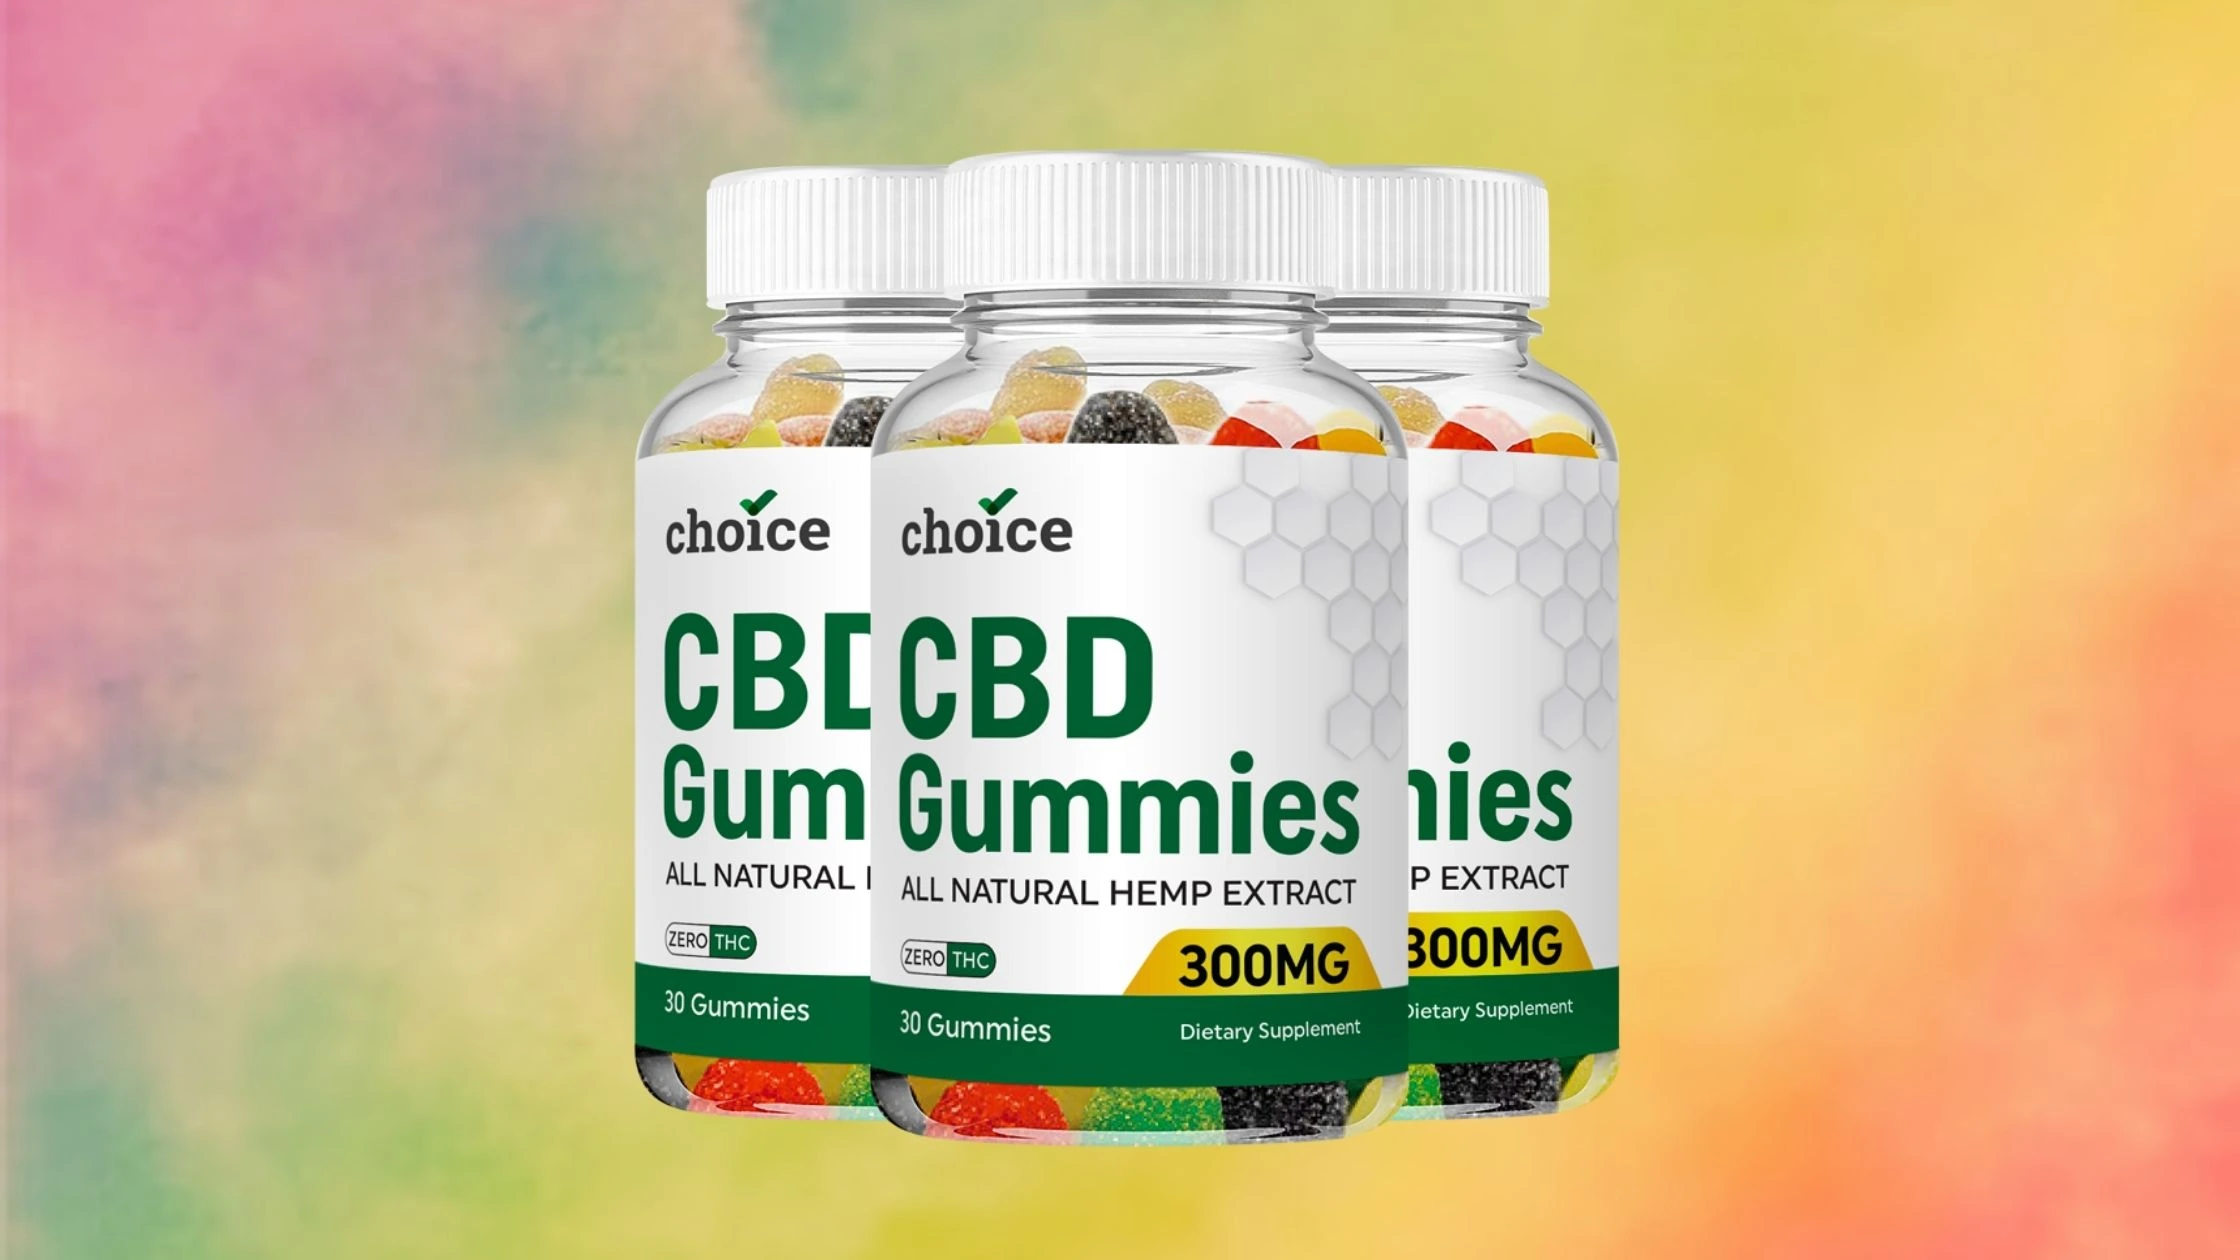 Choice CBD Gummies Reviews